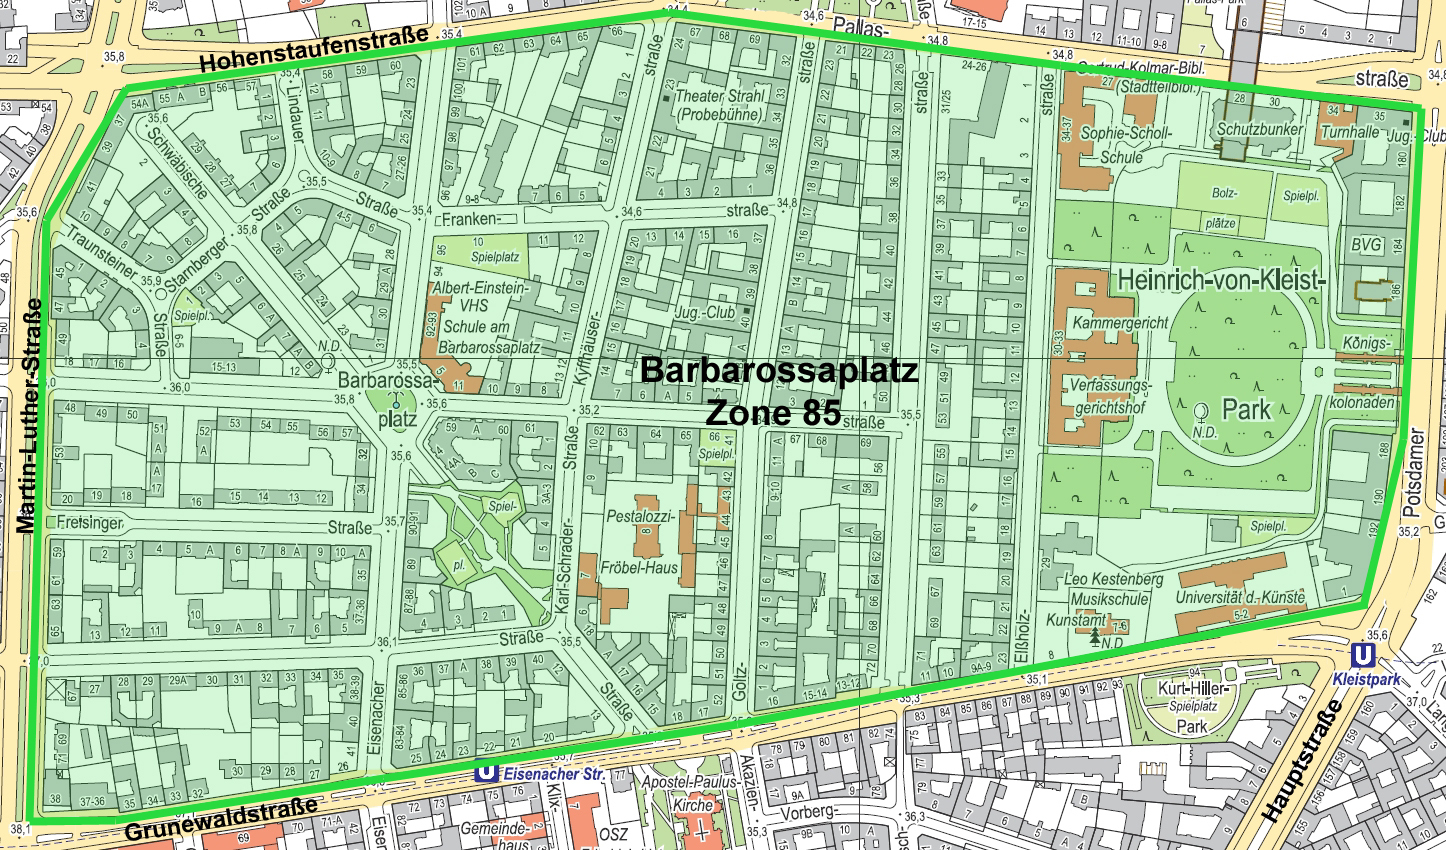 Eine Karte mit einem markierten Bereich. Der Bereich ist gekennzeichnet als Barbarossaplatz Zone 85